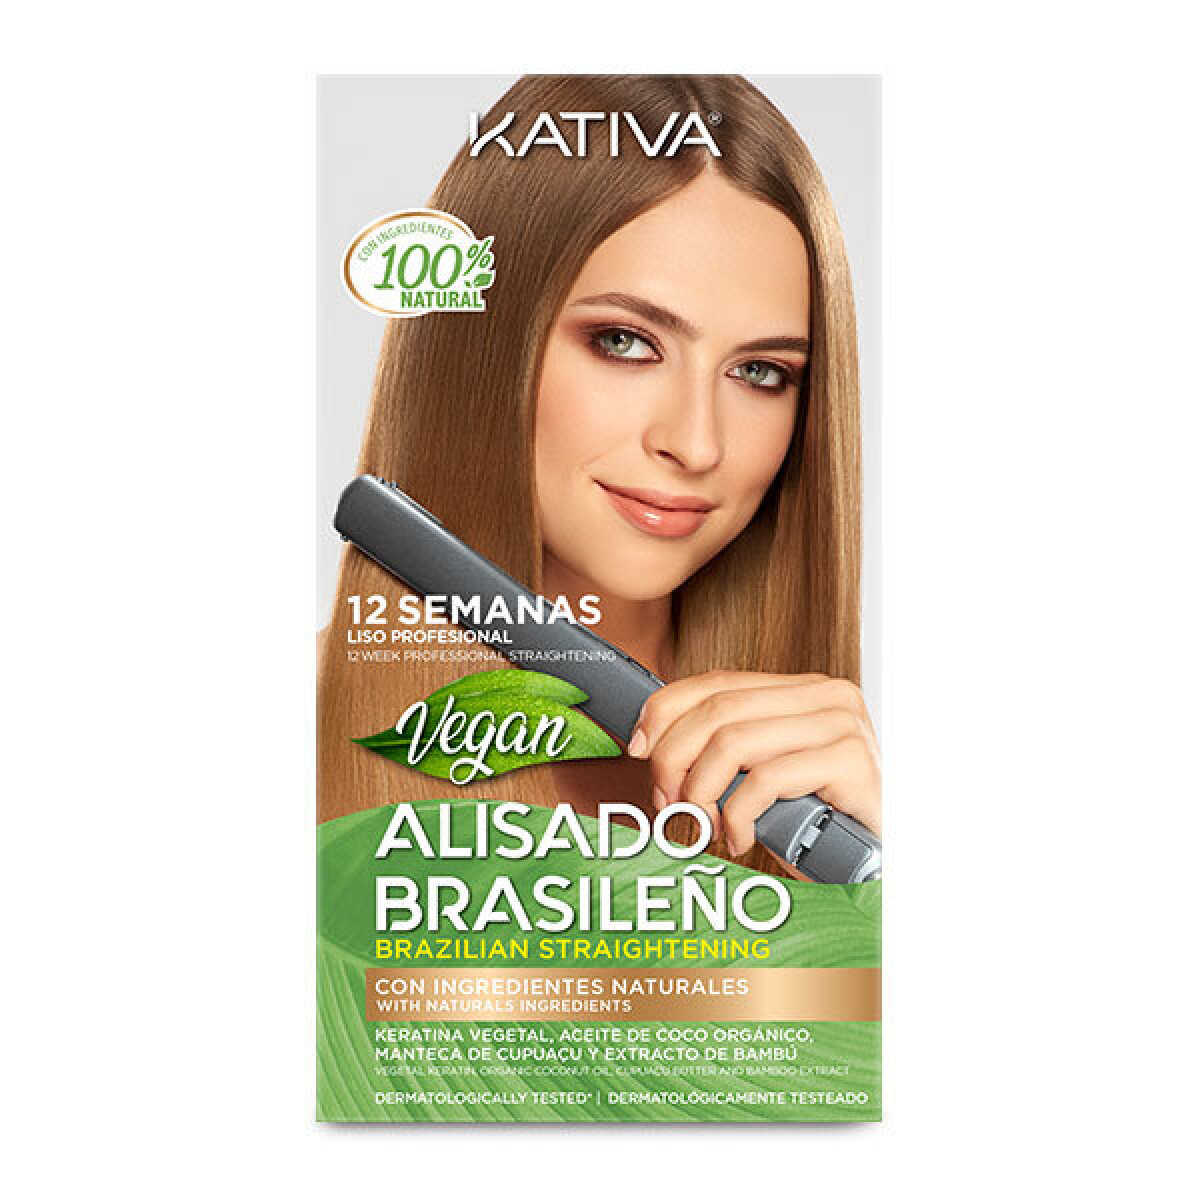 Kativa Alisado Brasileño VEGAN Kit 